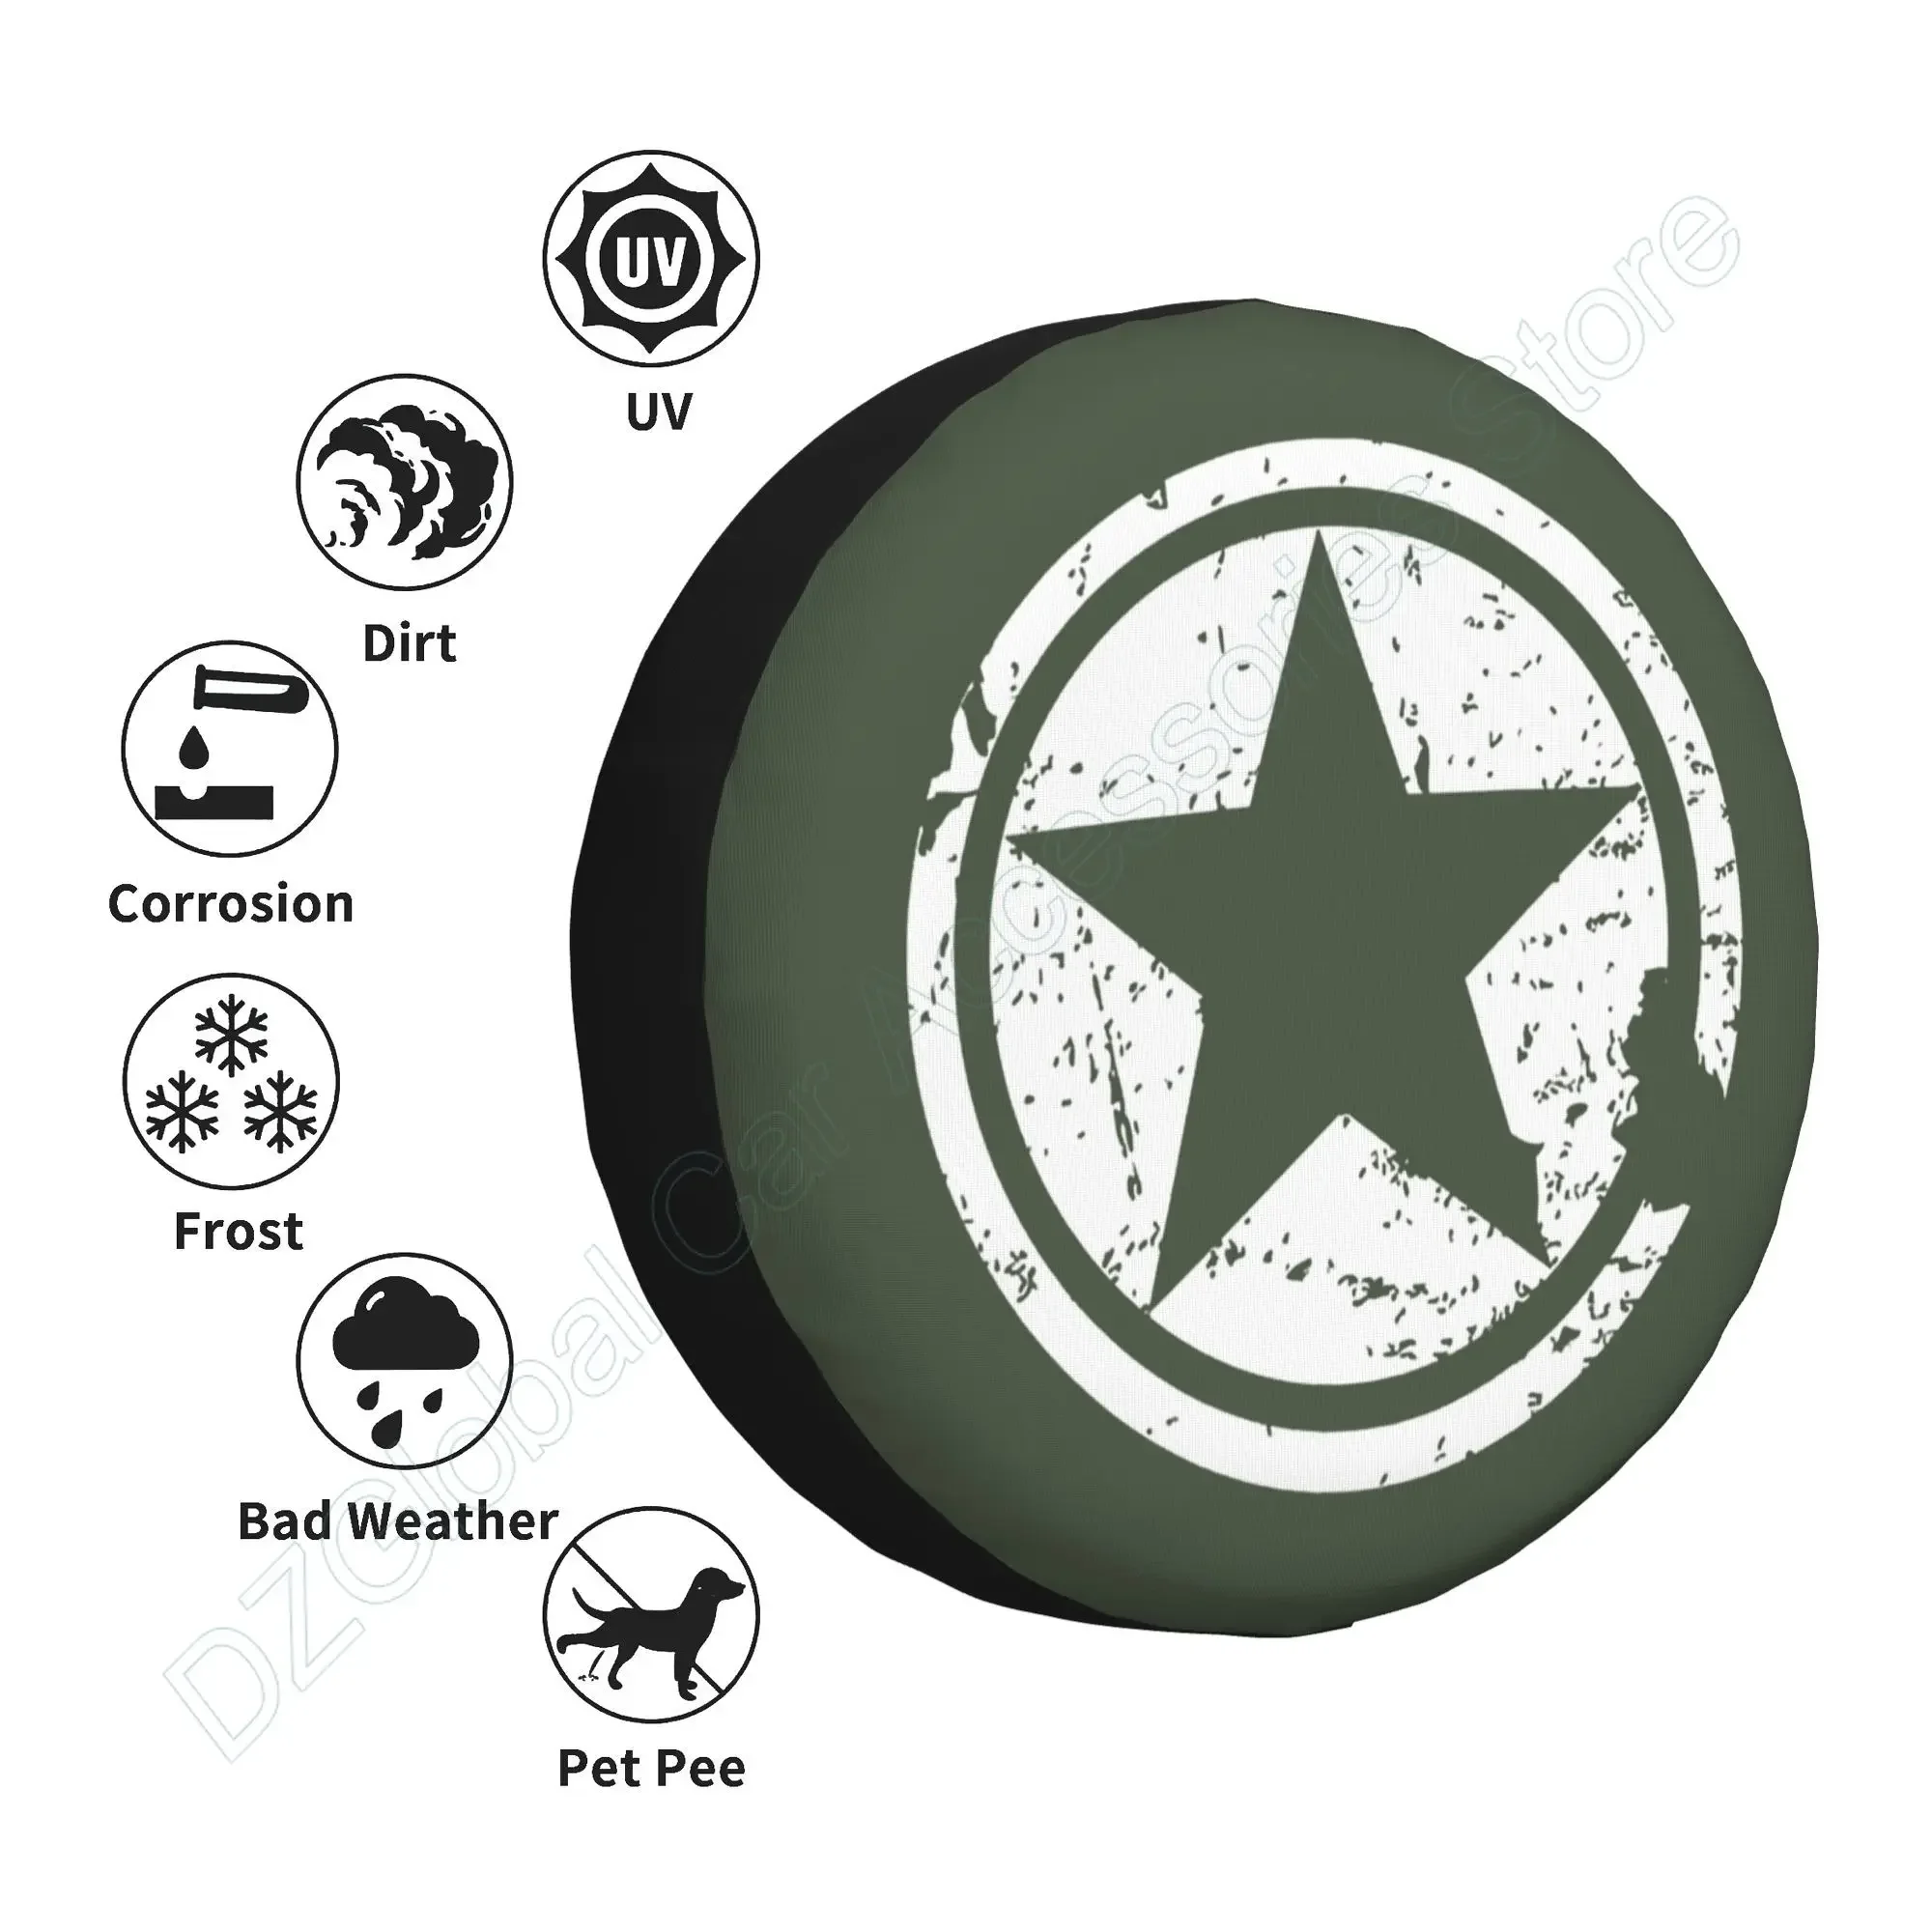 Nám armáda zelená hvězda náhradních pneumatika obal polyesterová univerzální opalovací krém vodotěsný kolo kryty pro přívěs rv SUV kamion